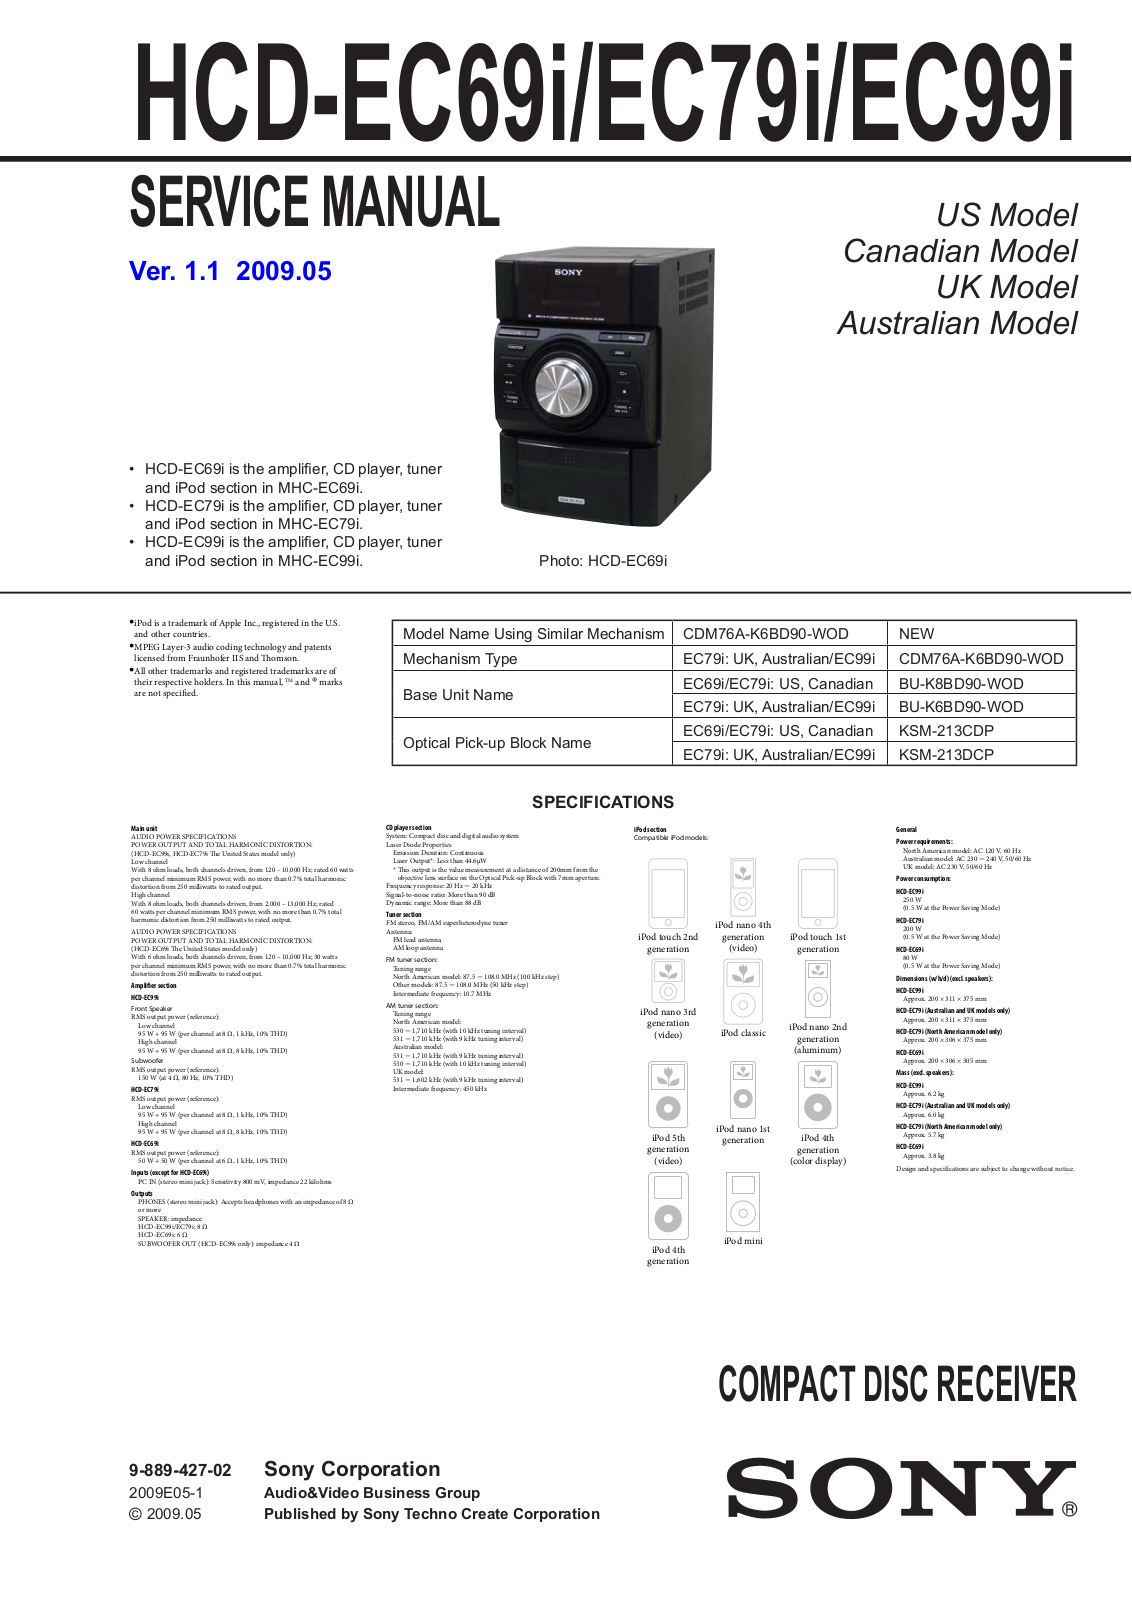 Sony HCDEC-69-I, HCDEC-79-I, HCDEC-99-I Service manual